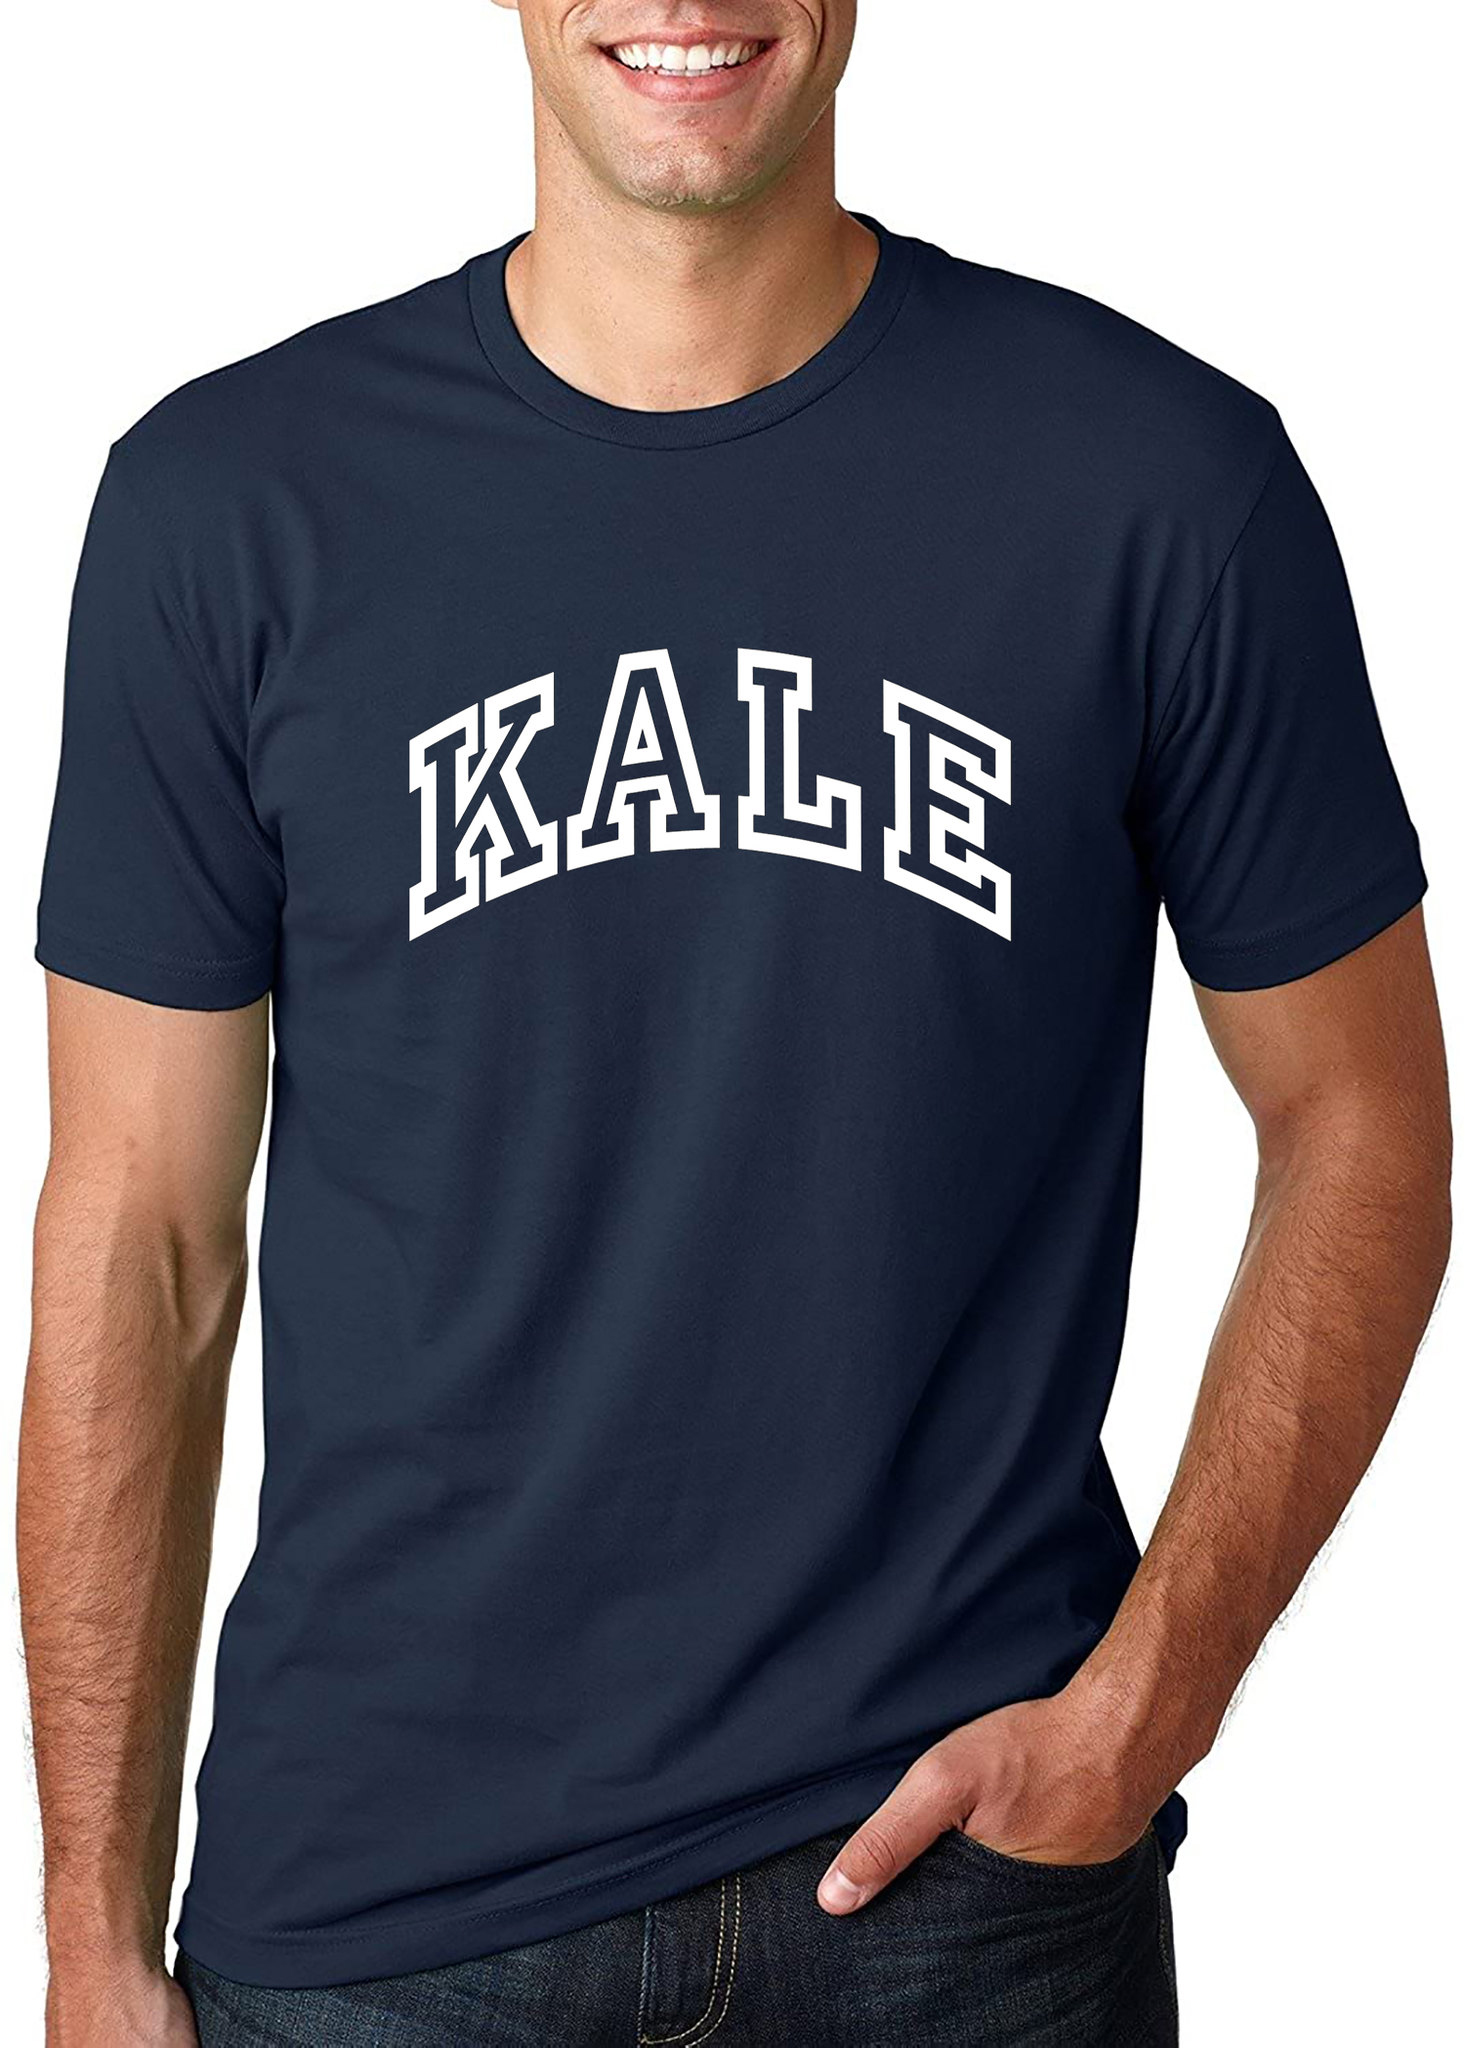 kale tshirt